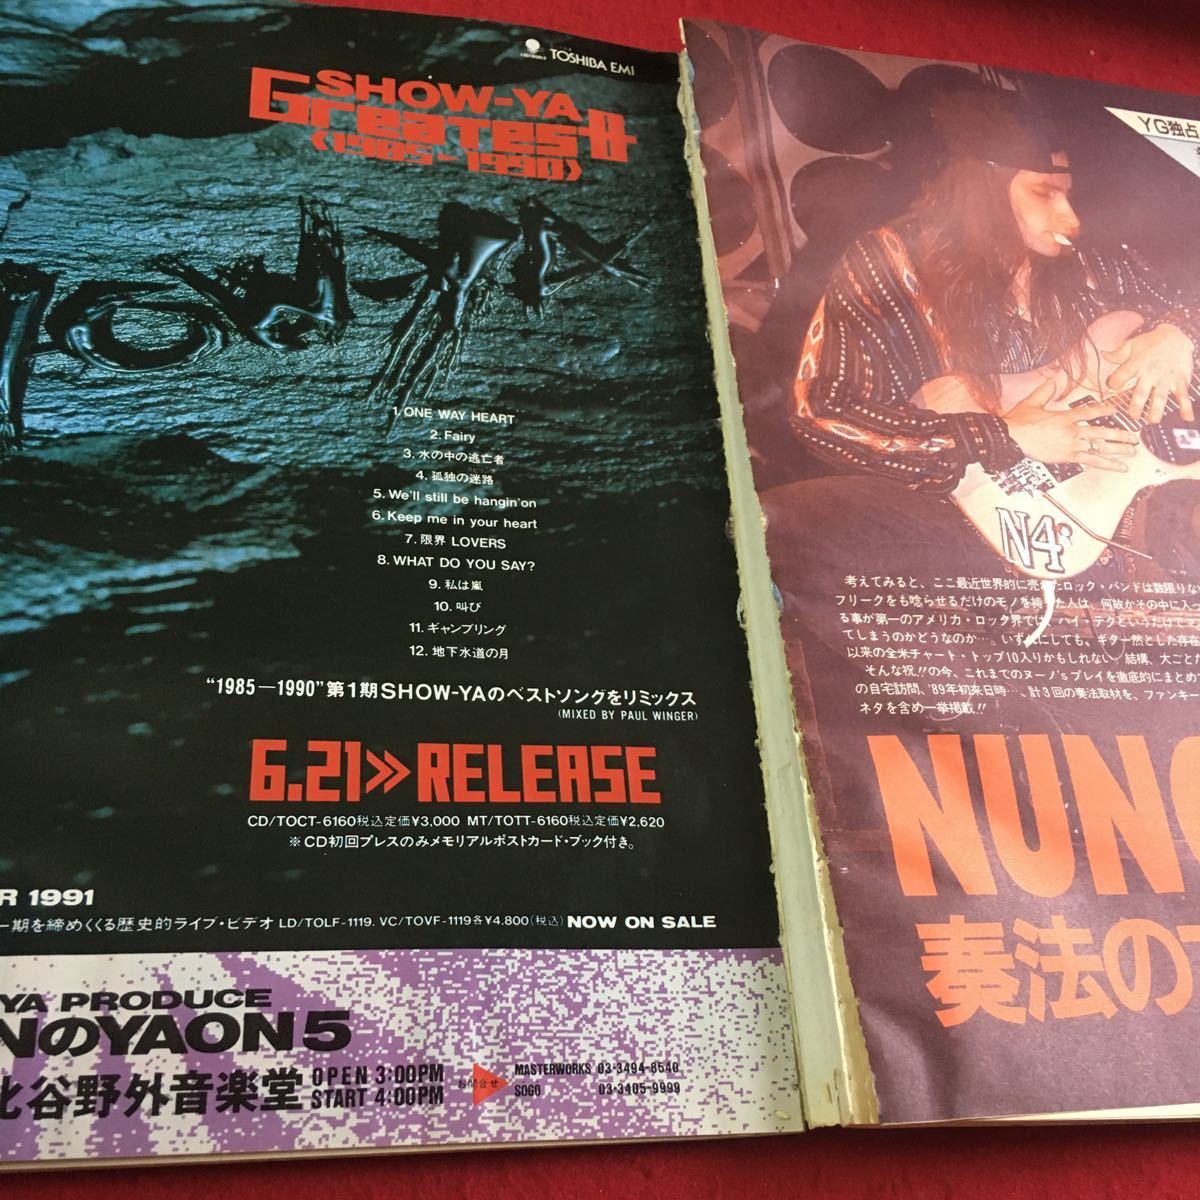 f-237※1ヤングギター 1991年7月号 NUNO BETTENCOURT SPECIAL!!…等 シンコー・ミュージック_ページ分離あり